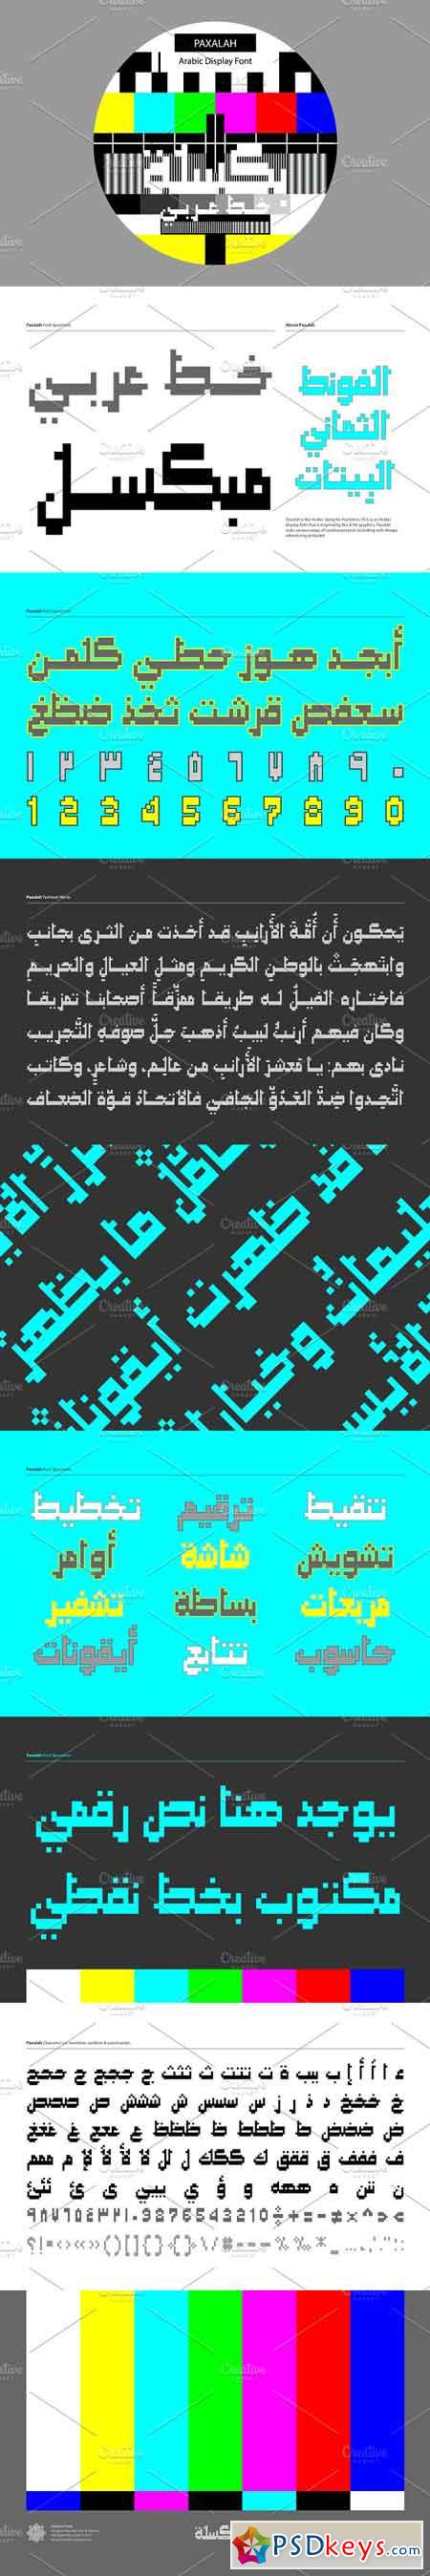 Paxalah, Arabic Font 1261471